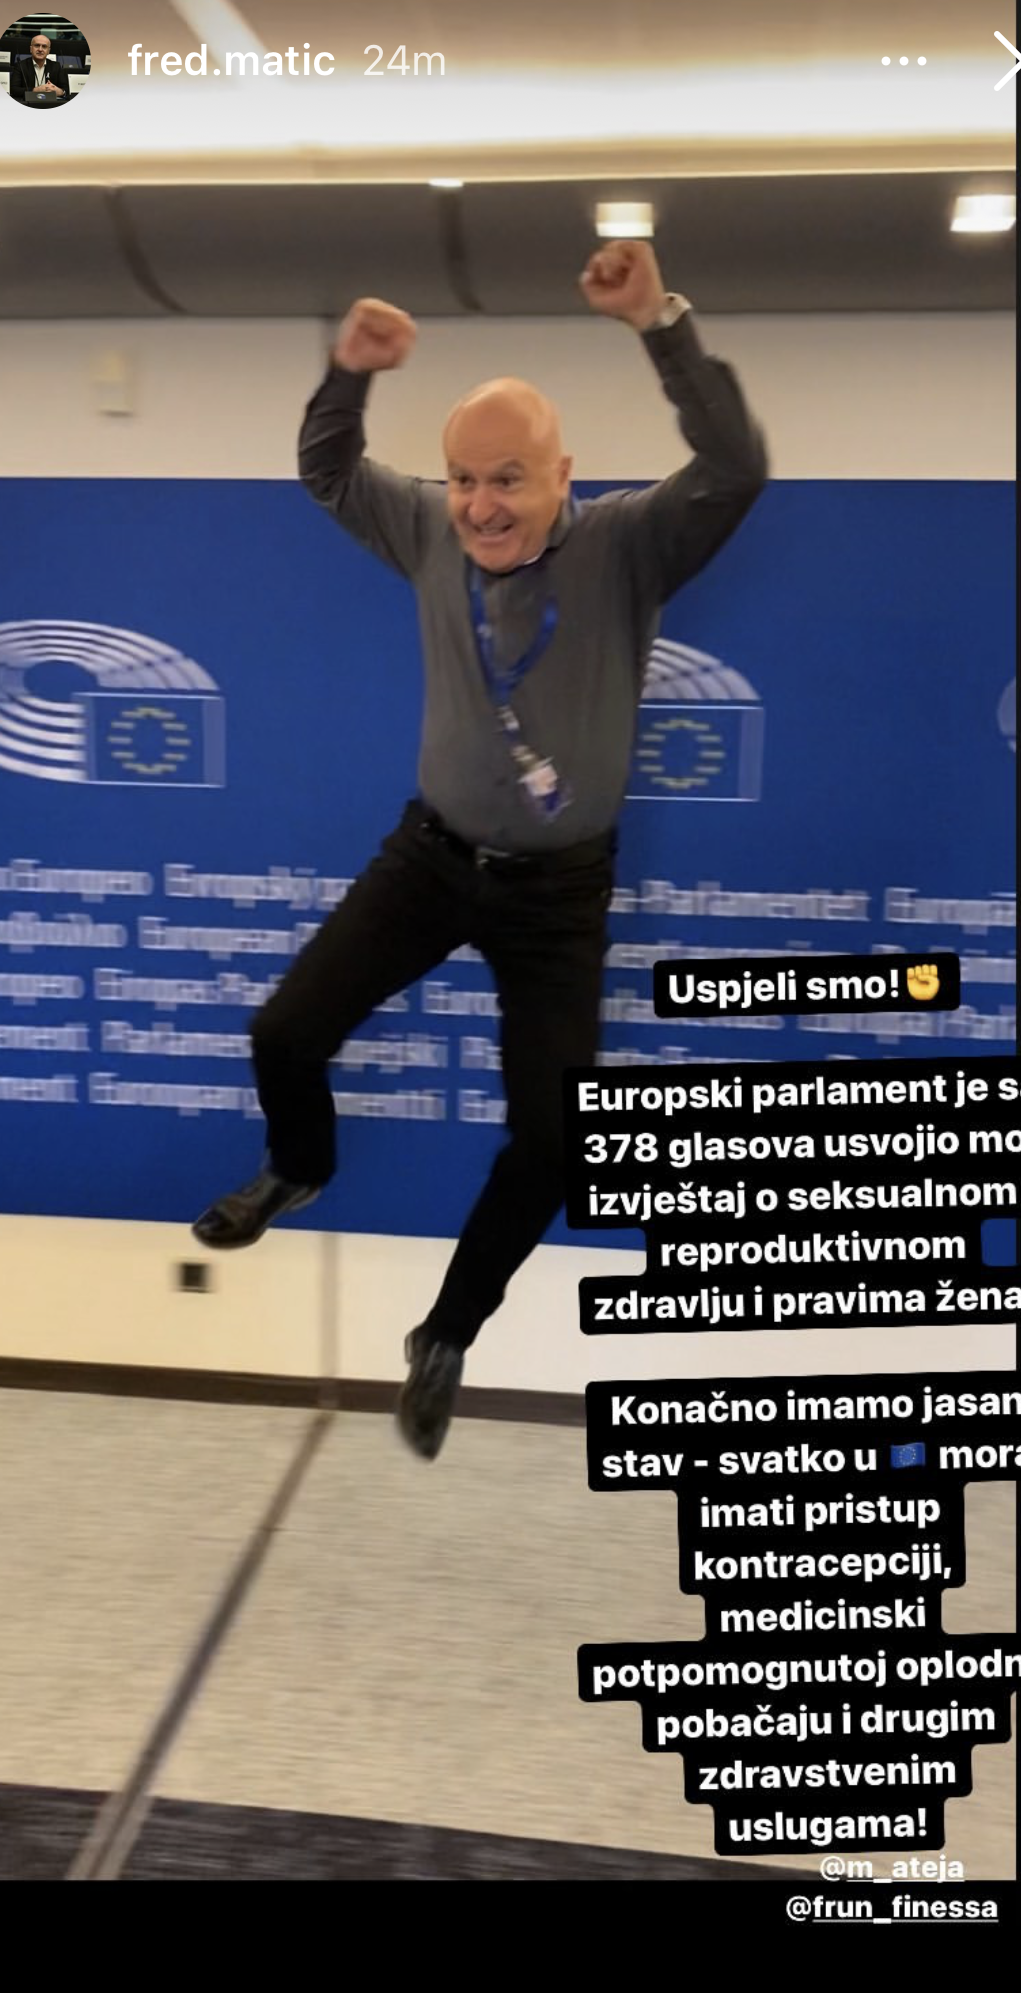 Ovako je Fred Matić reagirao kad je Europski parlament usvojio njegovu  rezoluciju o pravu na pobačaj | Telegram.hr